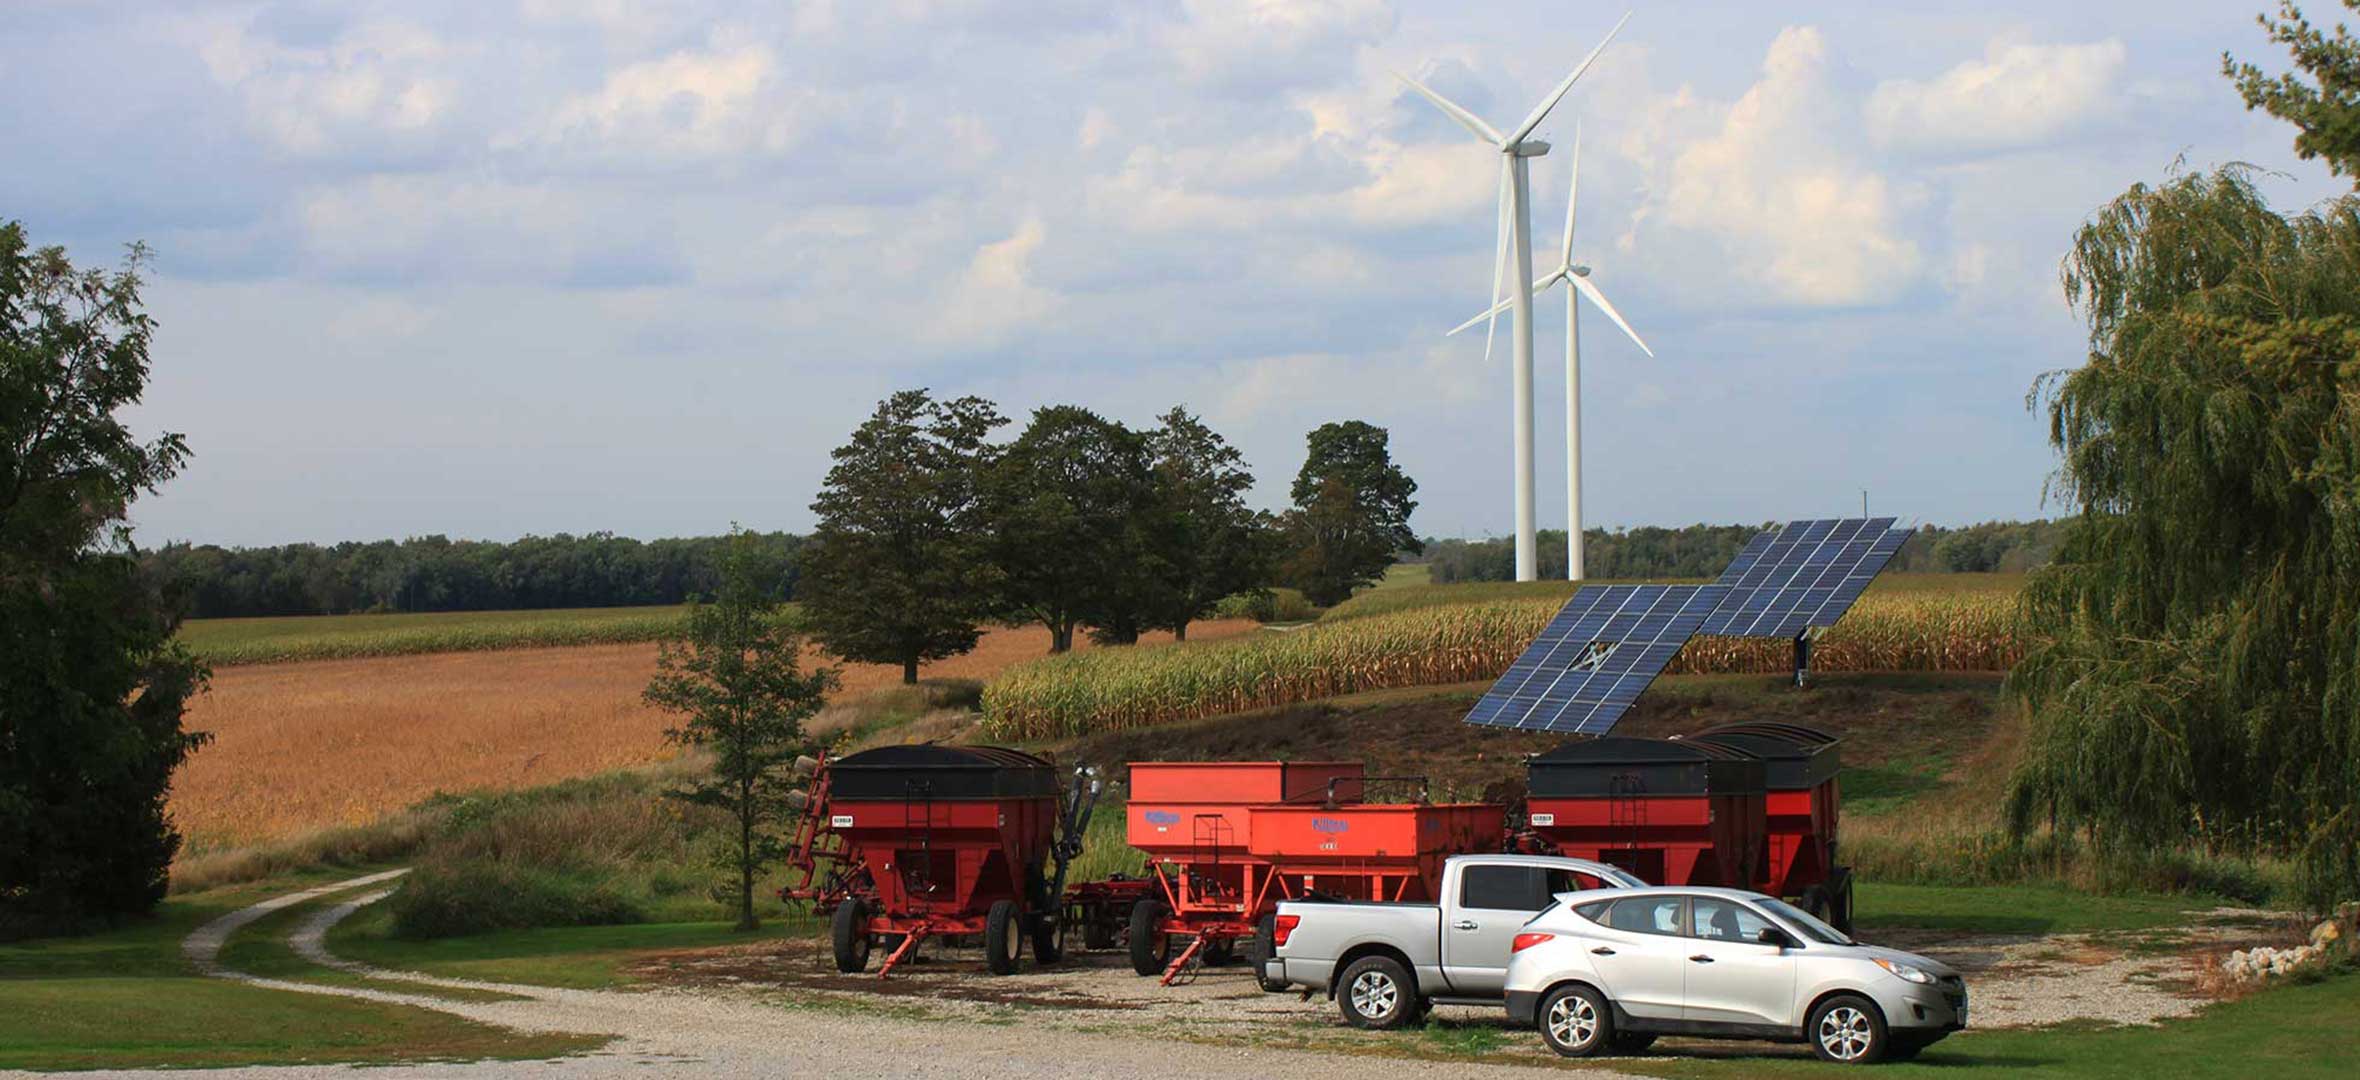 Gunn's Hill Wind Farm